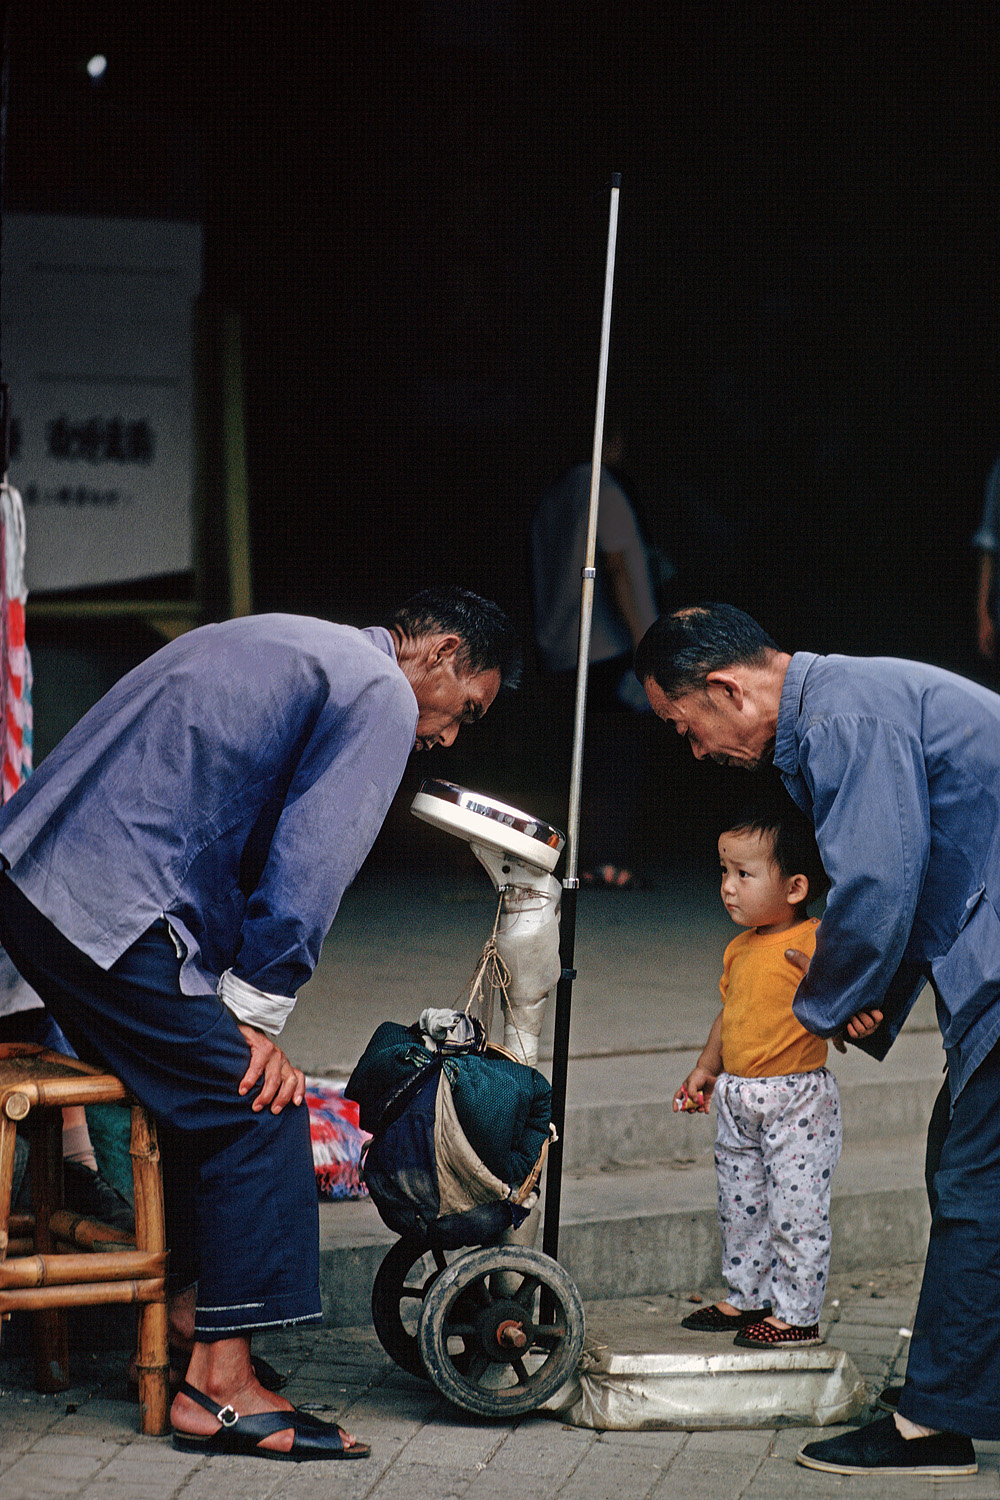 bill-hocker-public-scale-sichuan-china-1981